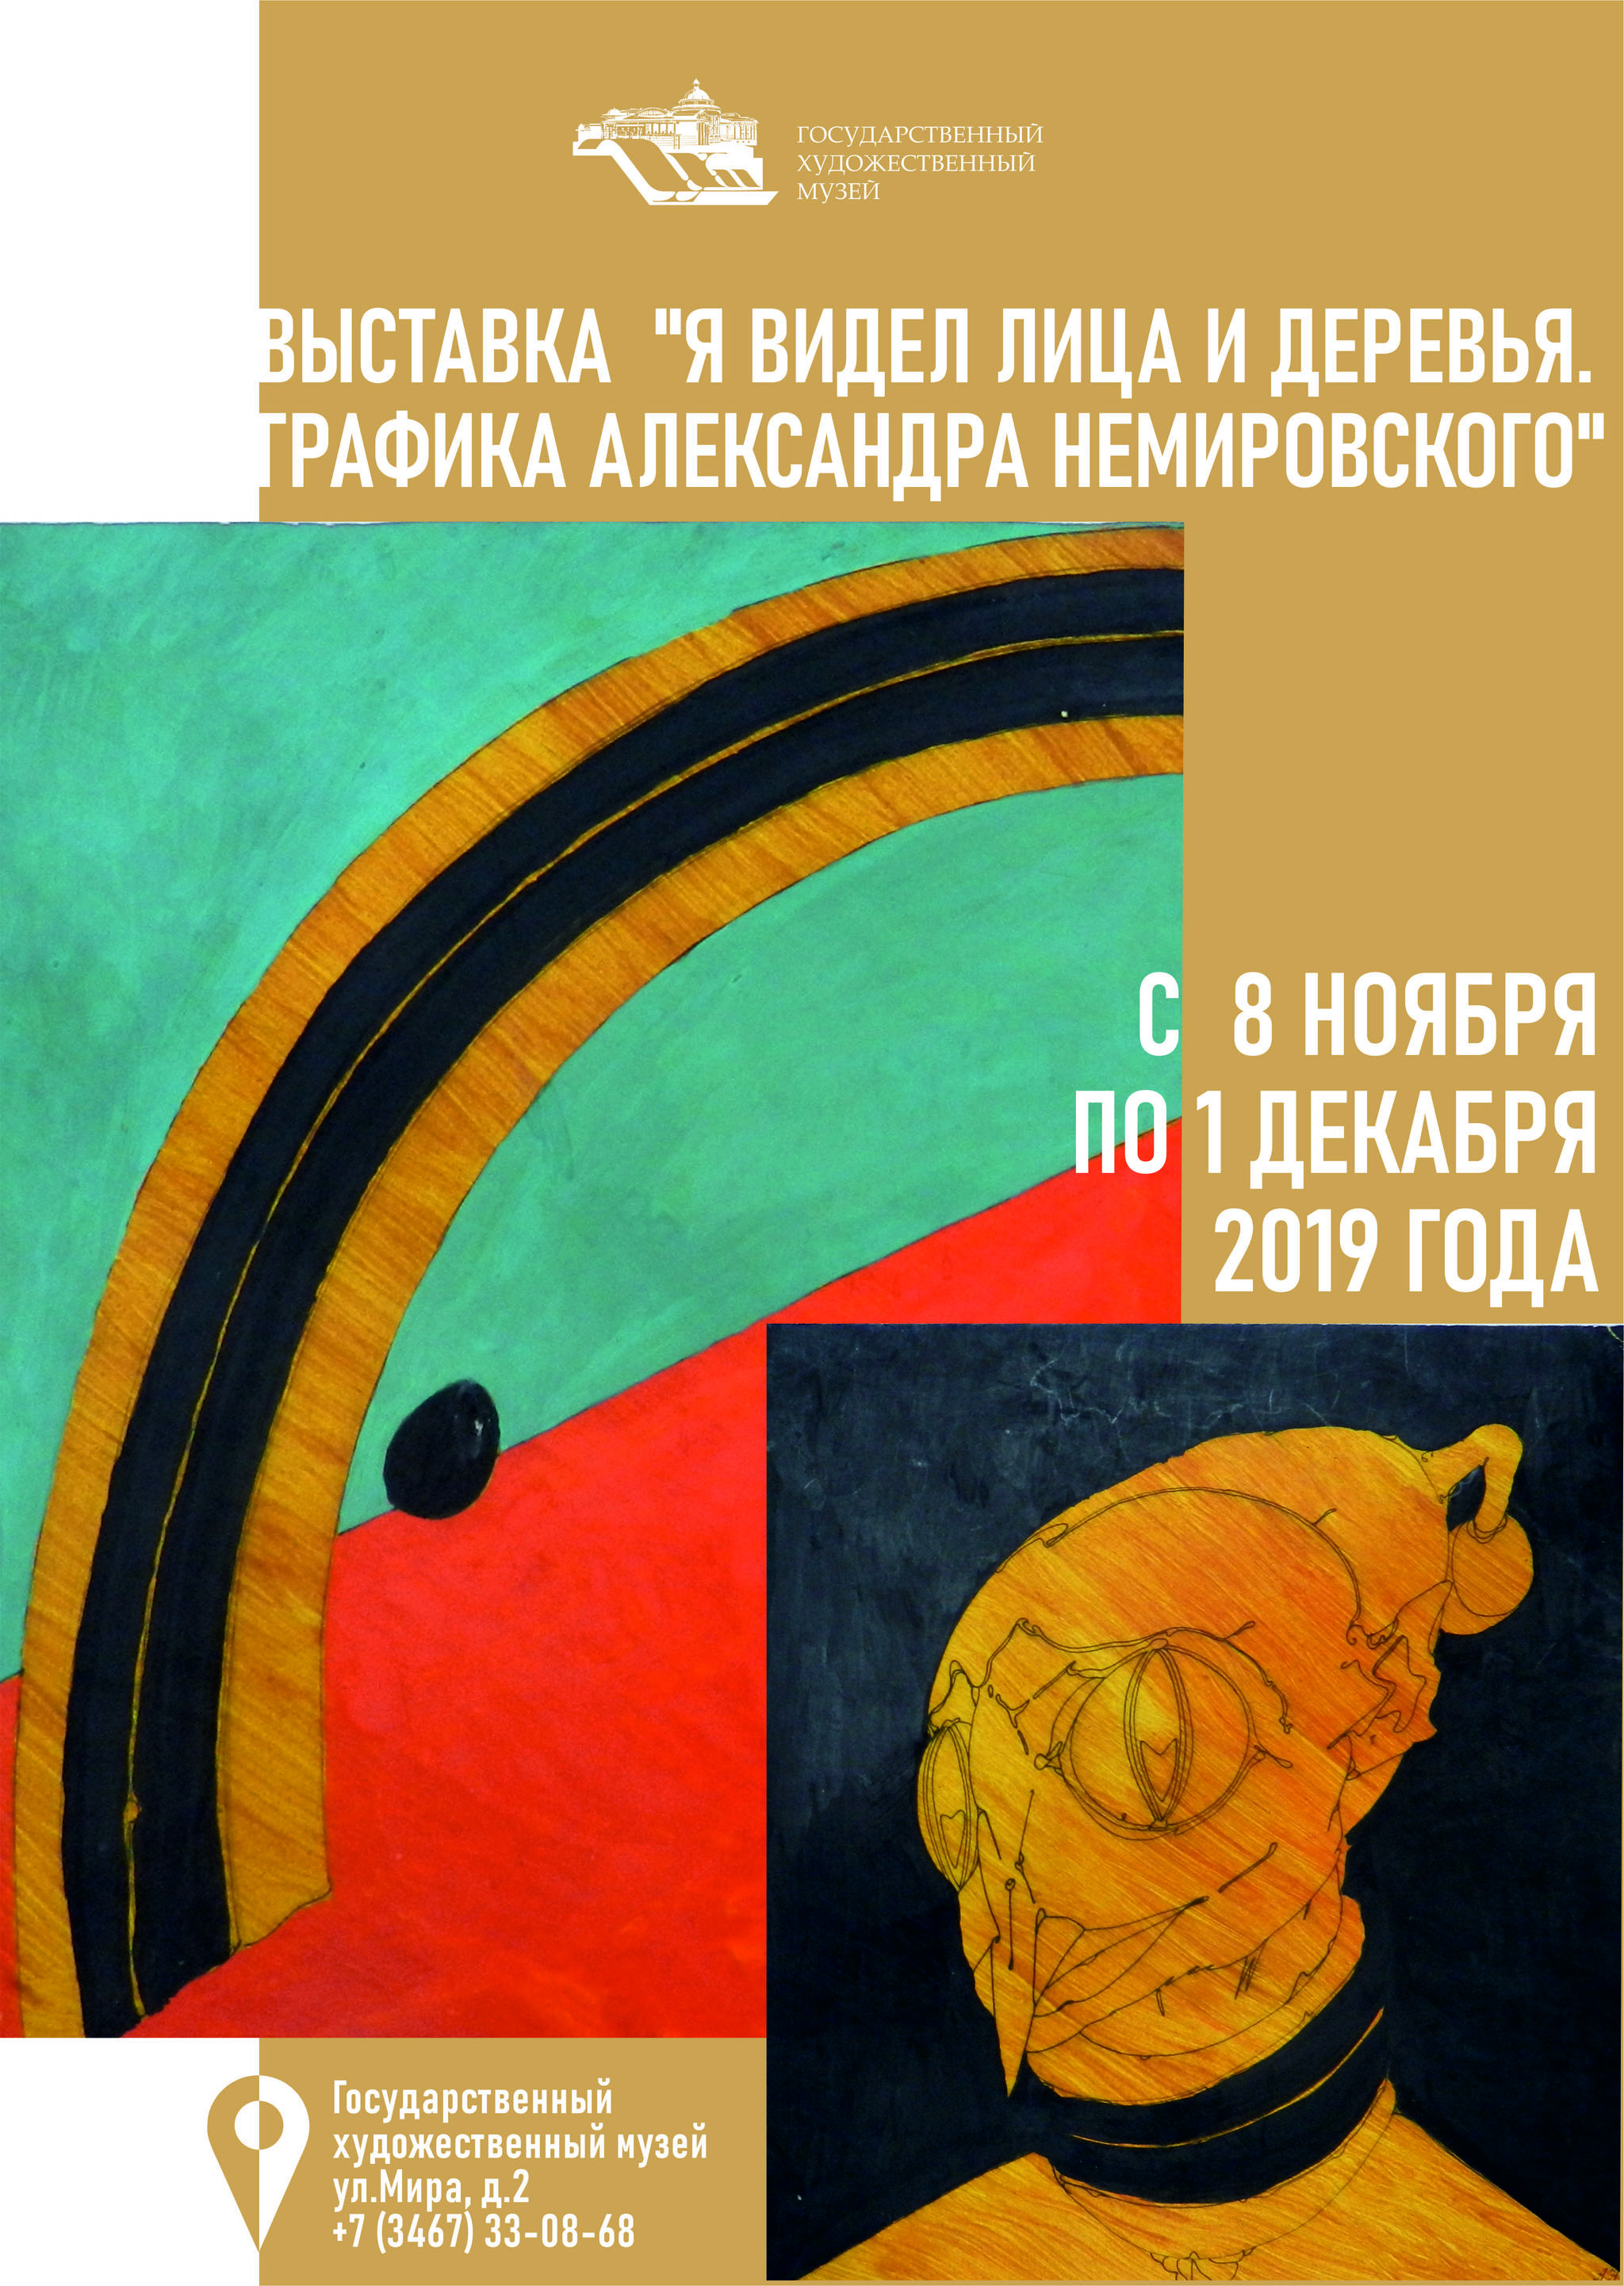 Графика Александра Немировского представлена в Государственном художественном музее